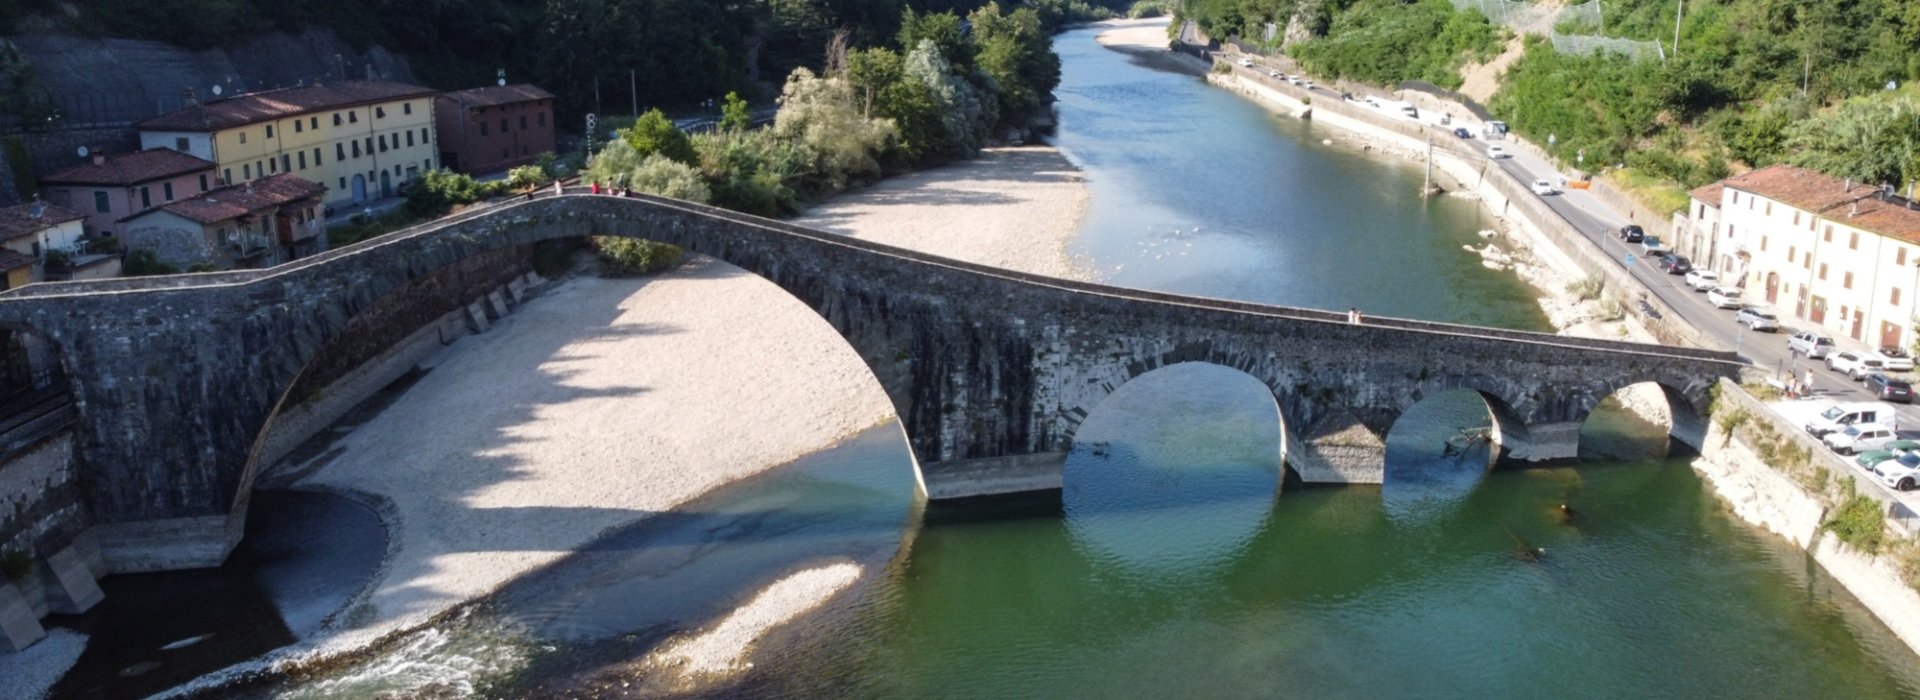 Ponte della Maddalena Borgo a mozzano, Lucca